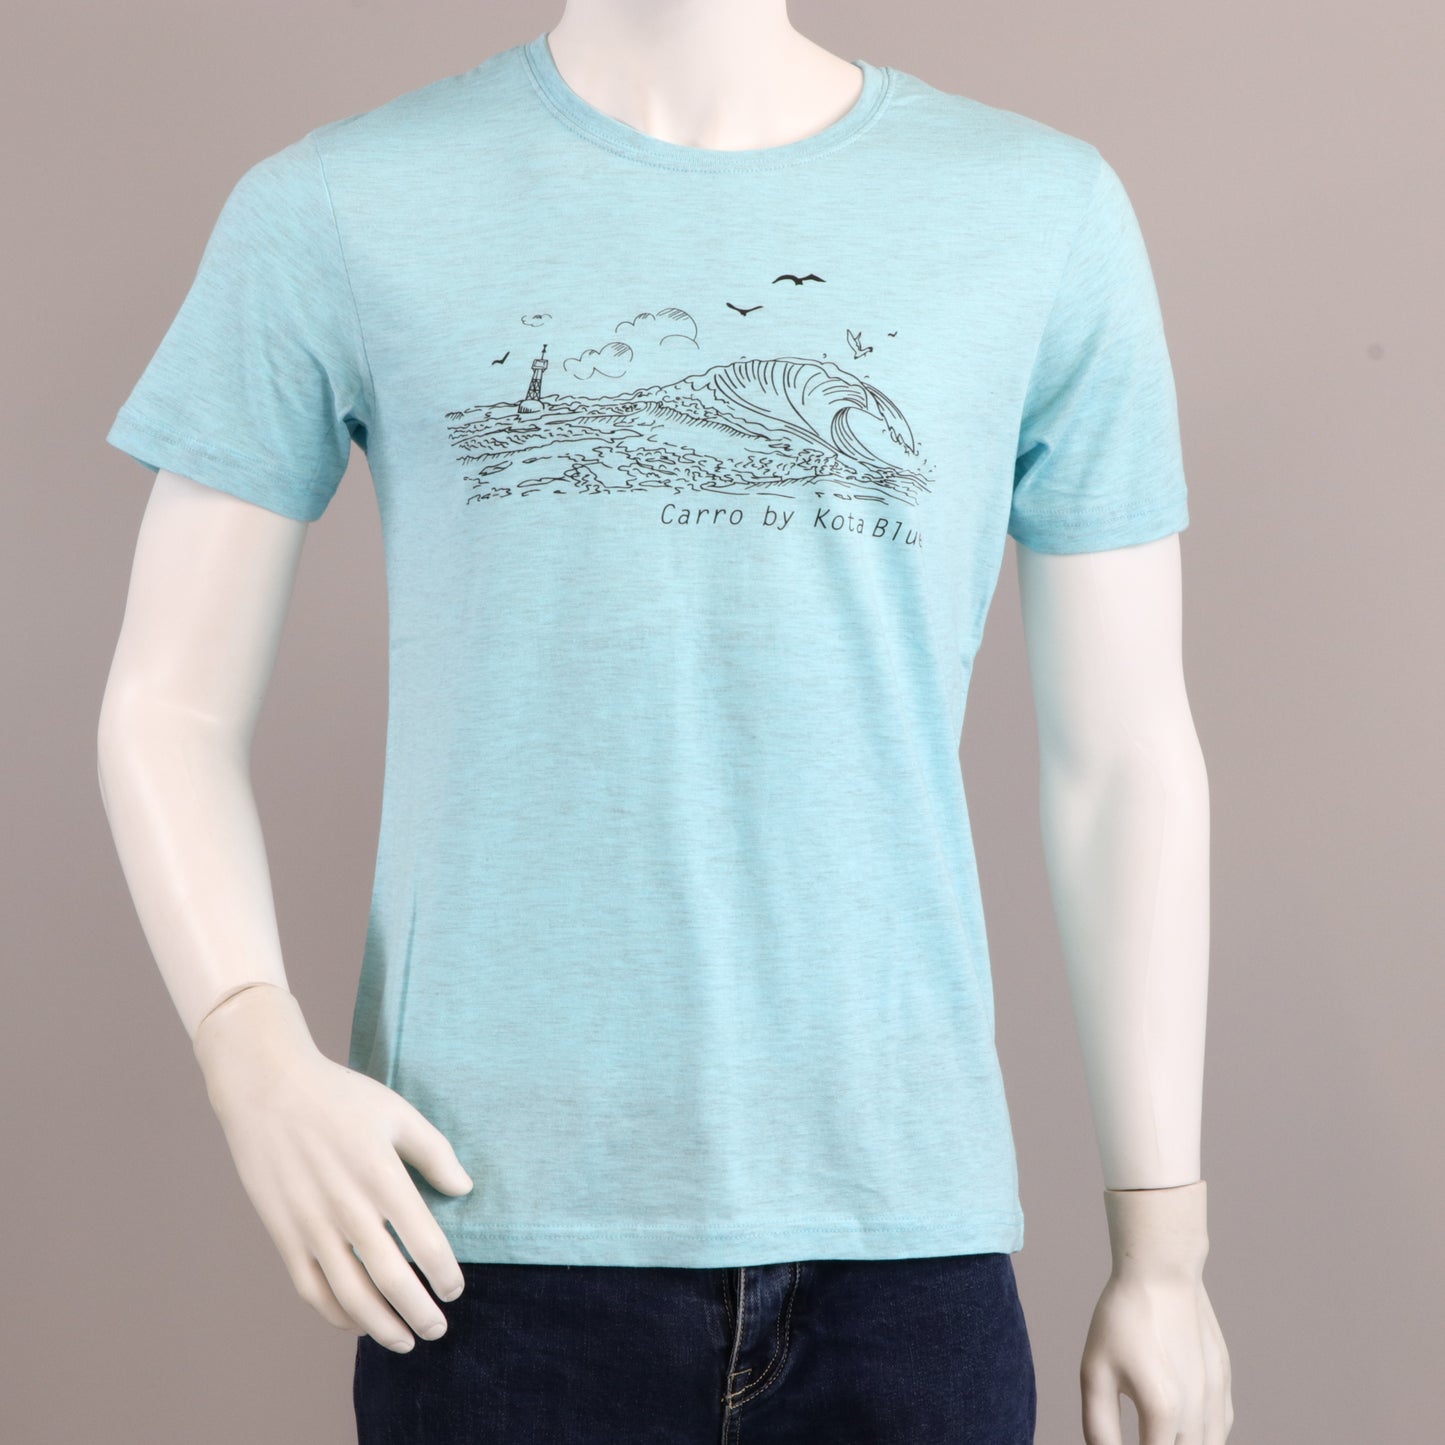 T-shirt bleu océan avec la vague de Carro en noir